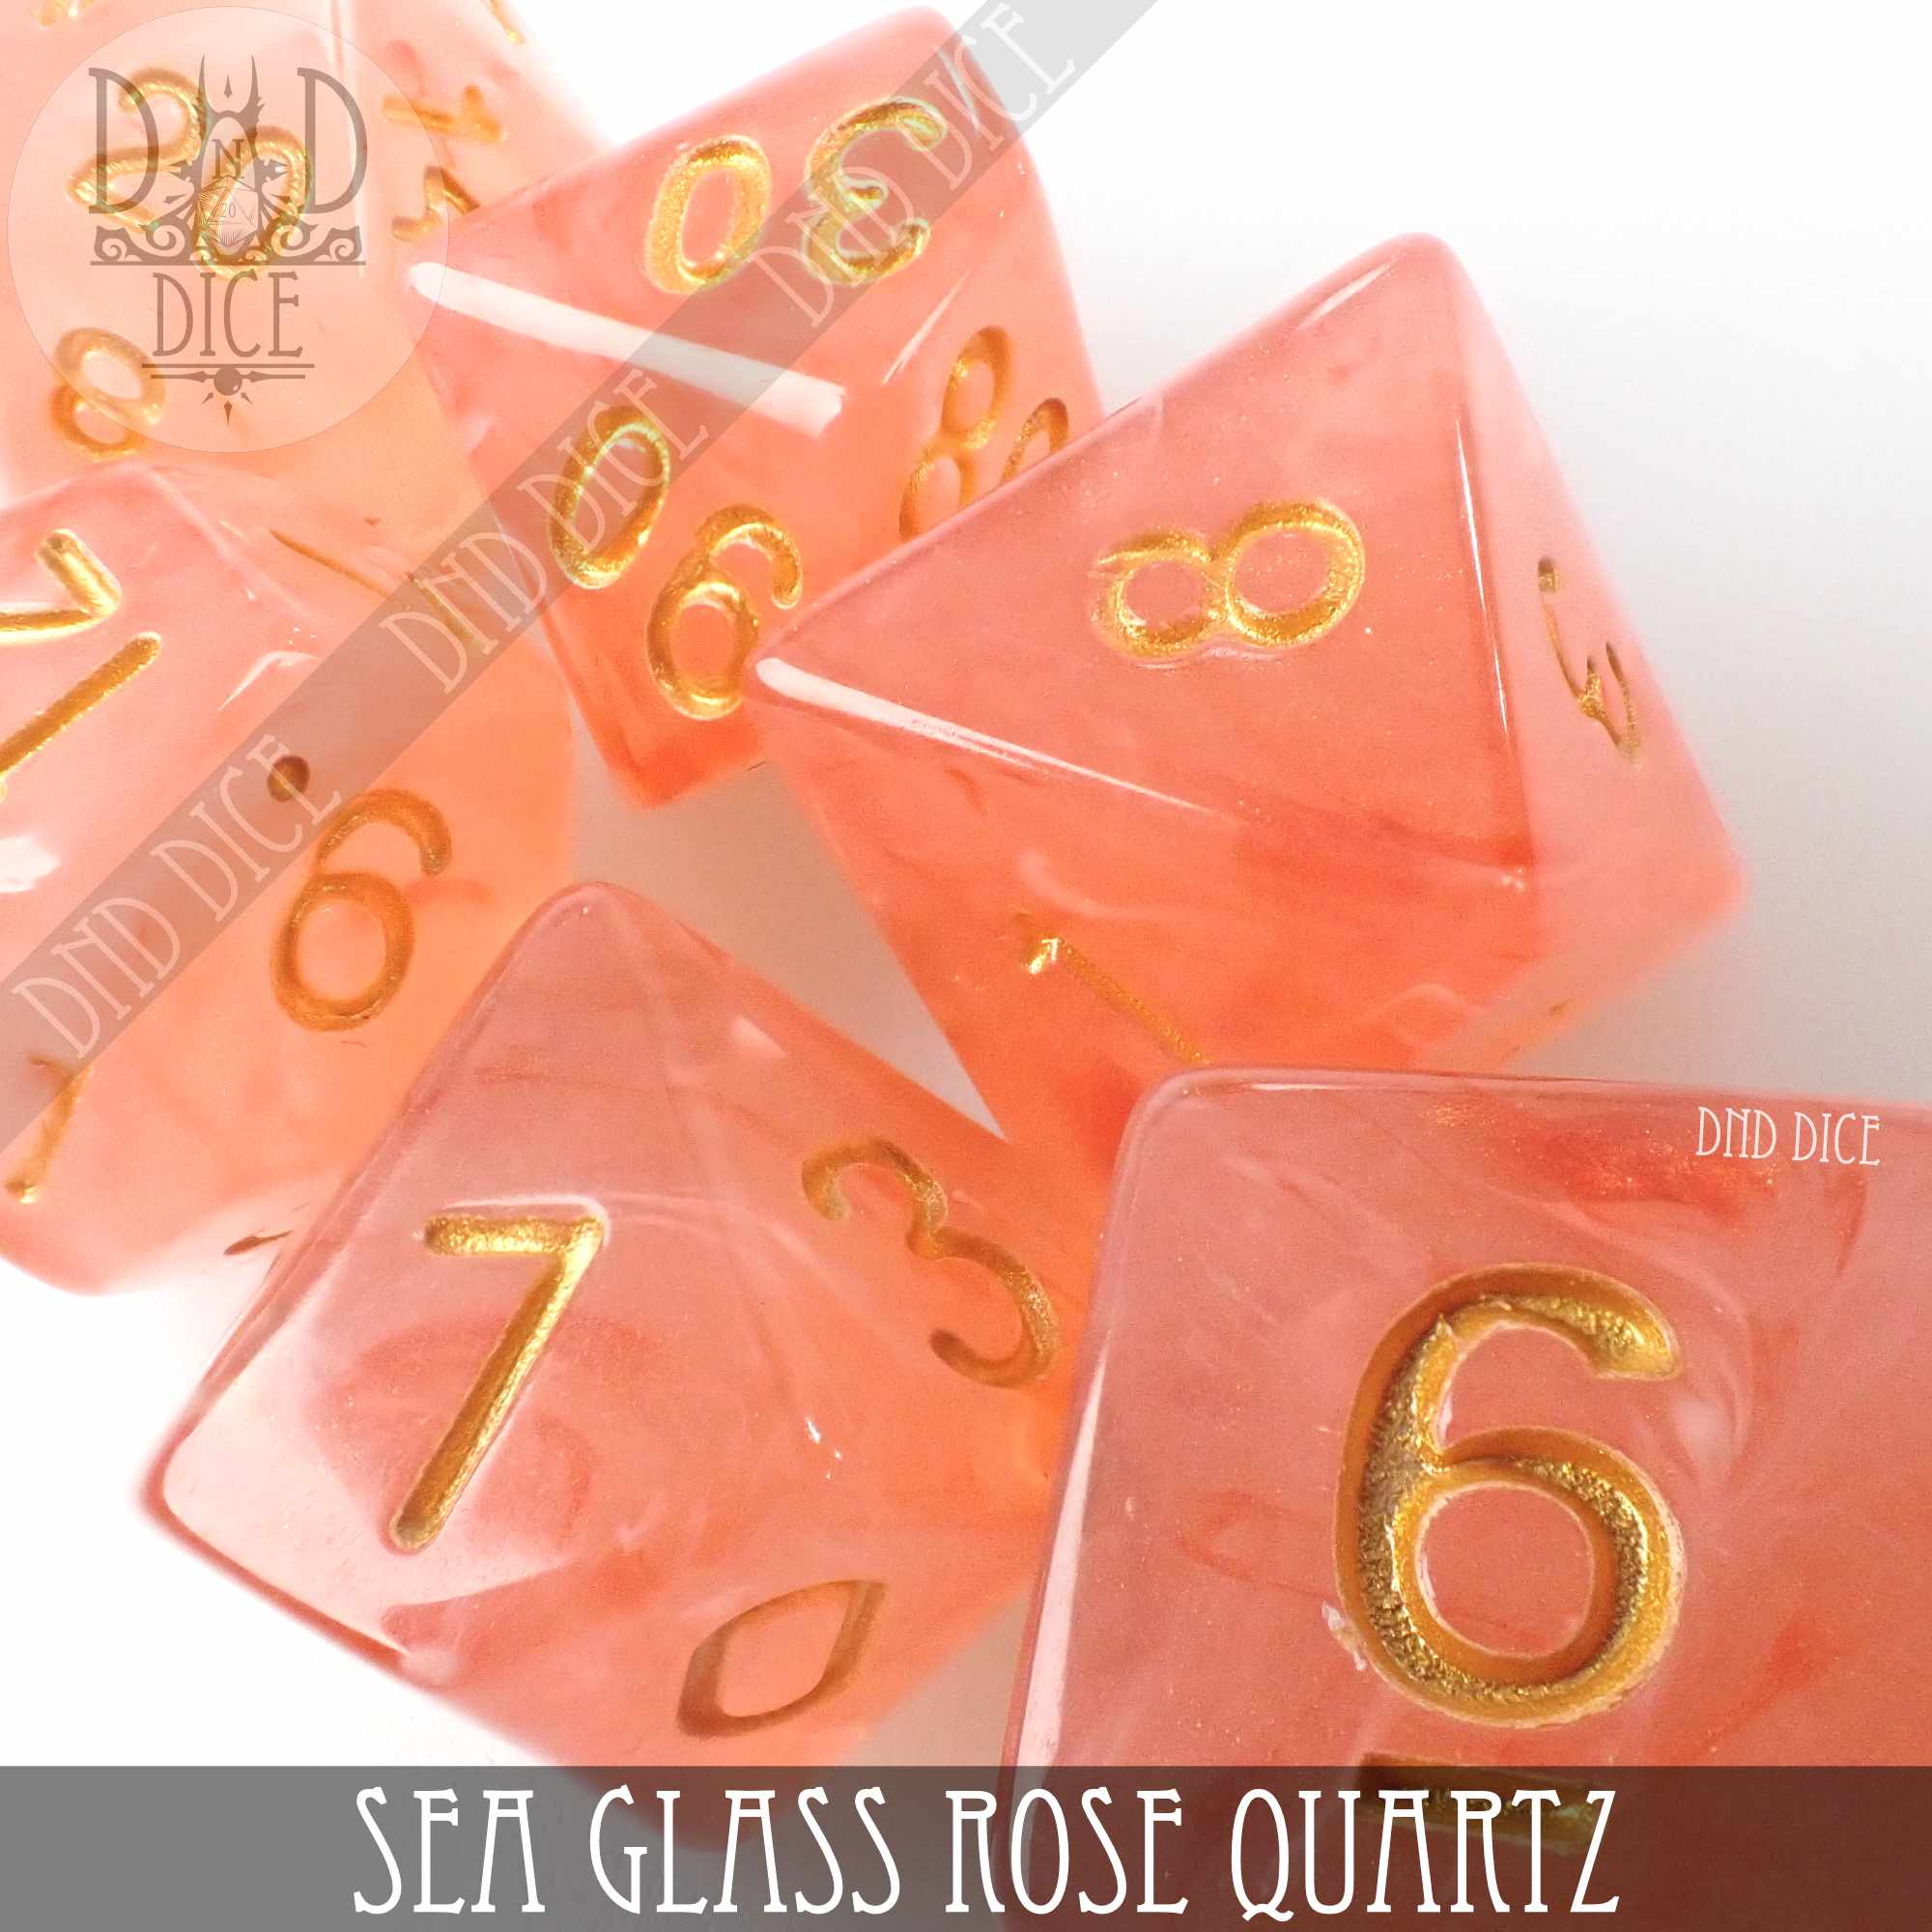 Sea Glass Rose Quartz